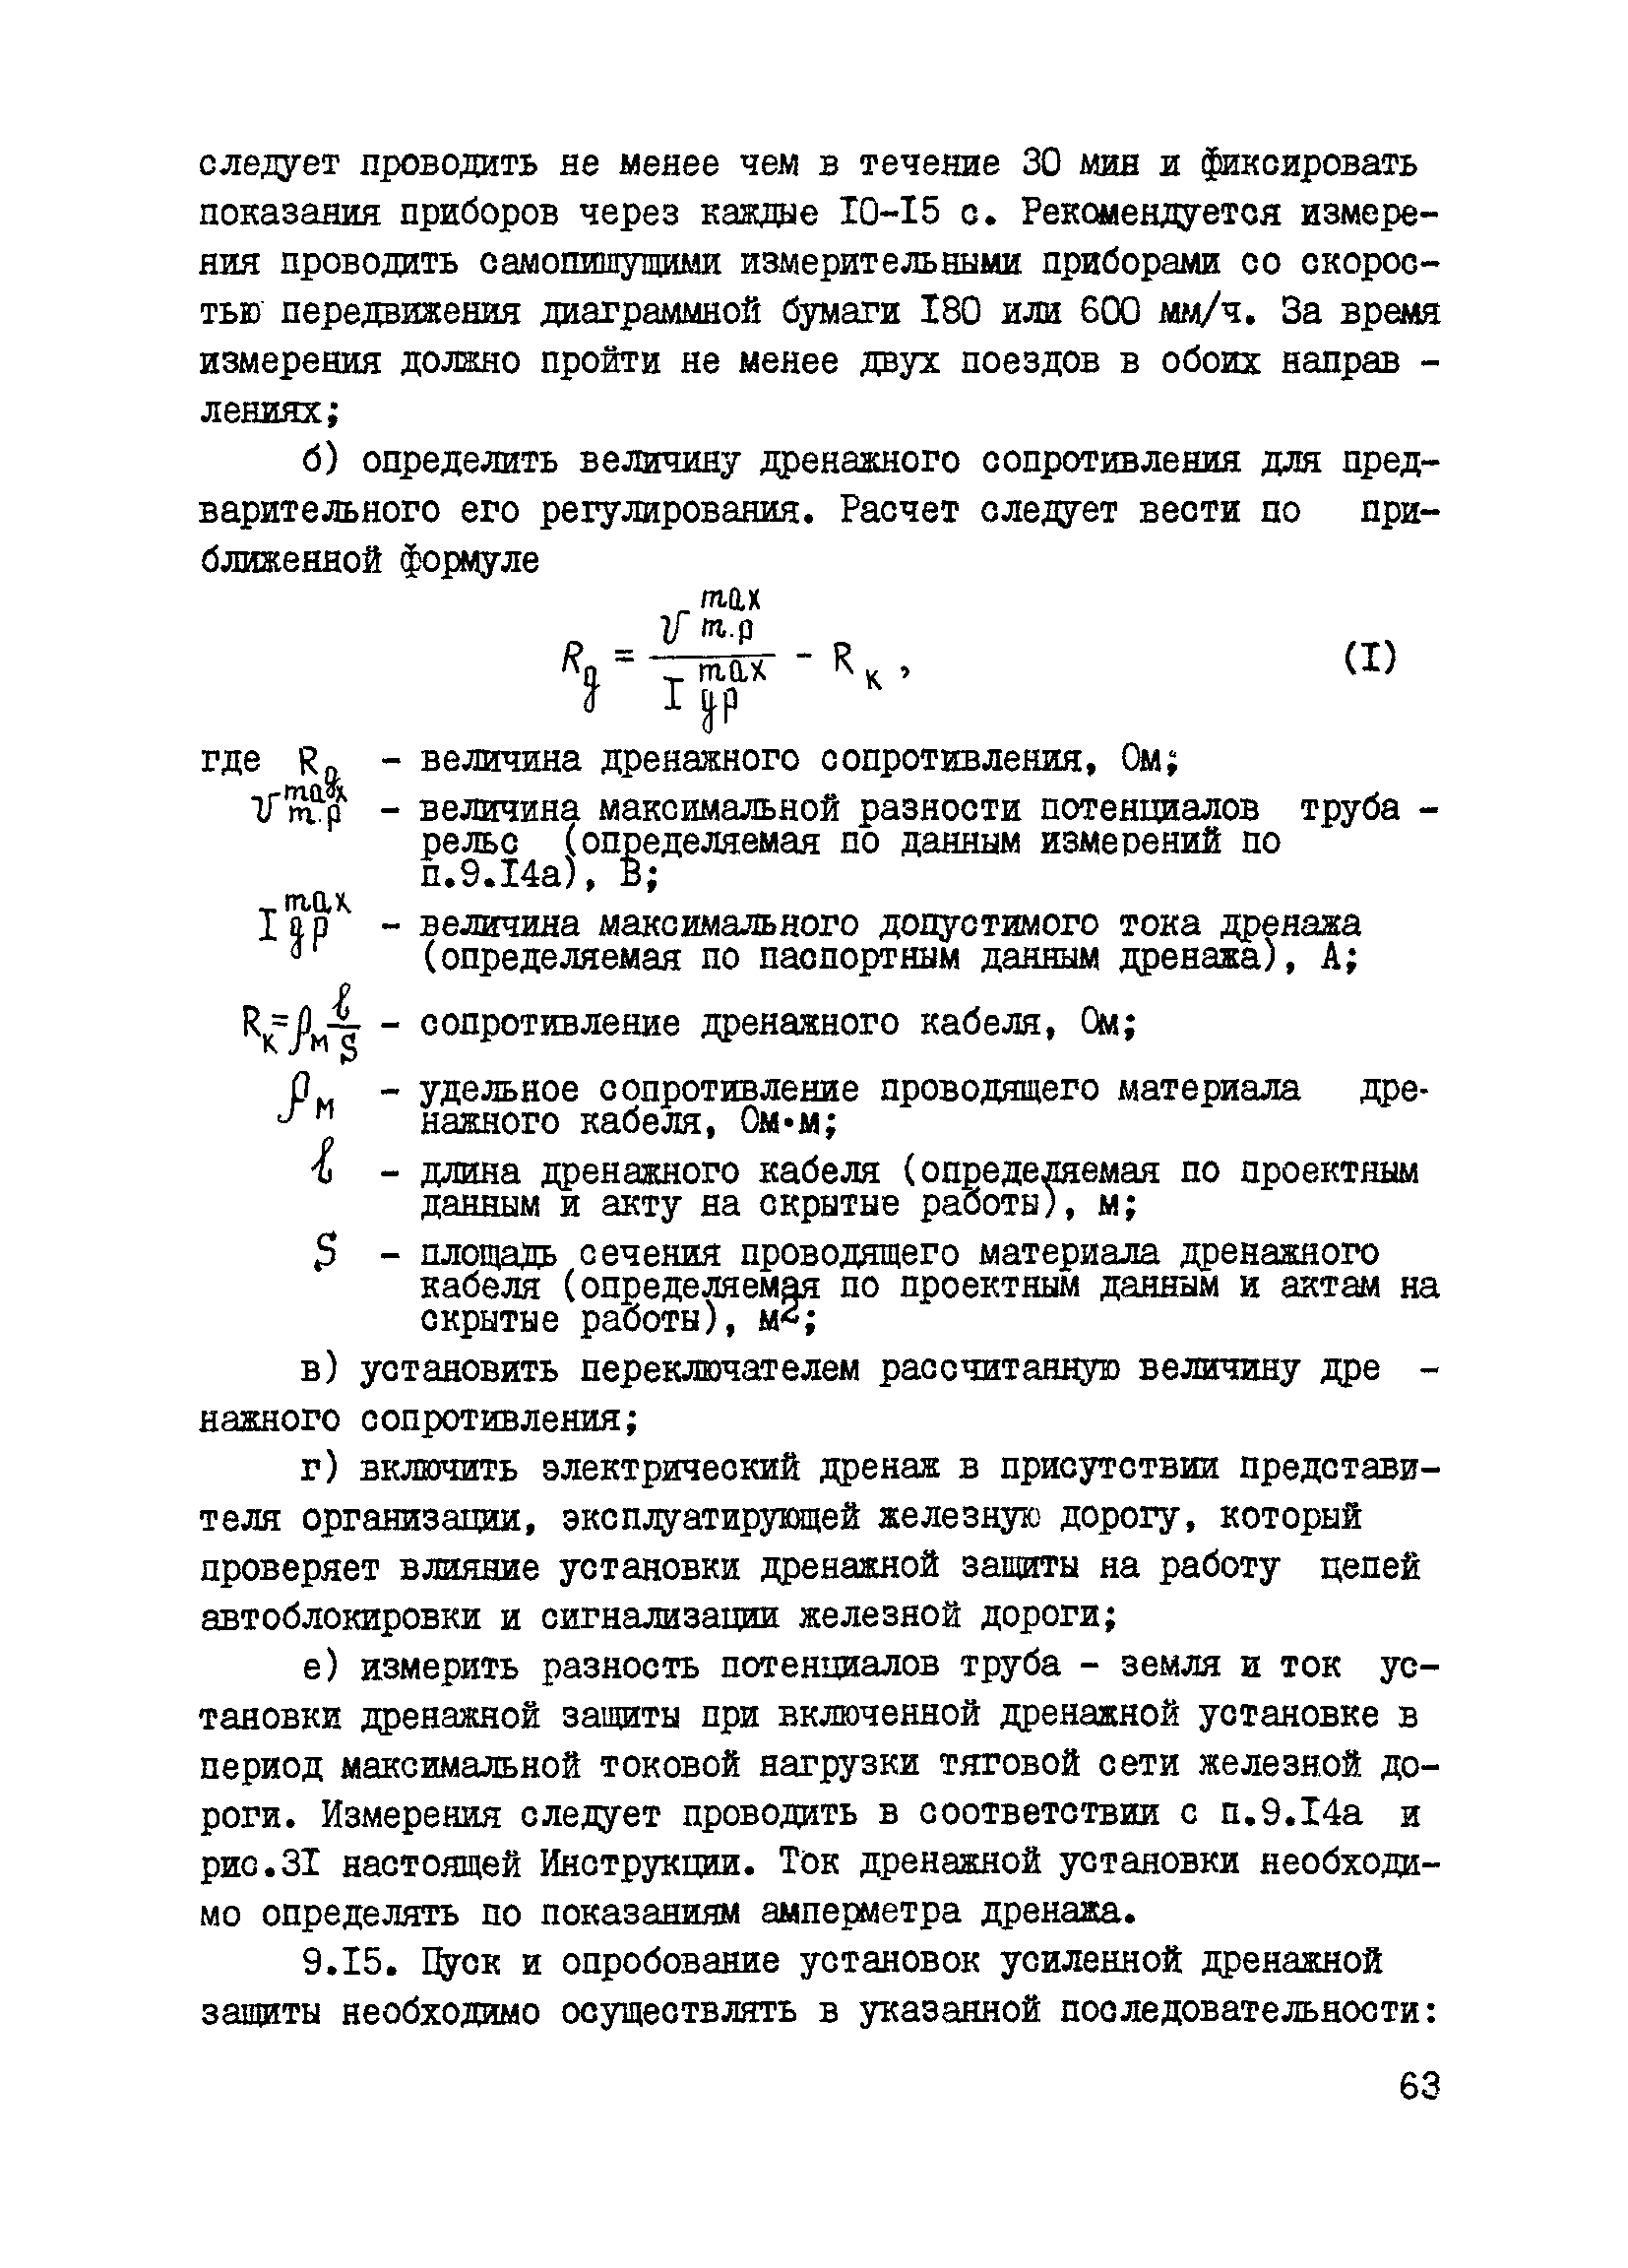 ВСН 2-127-81